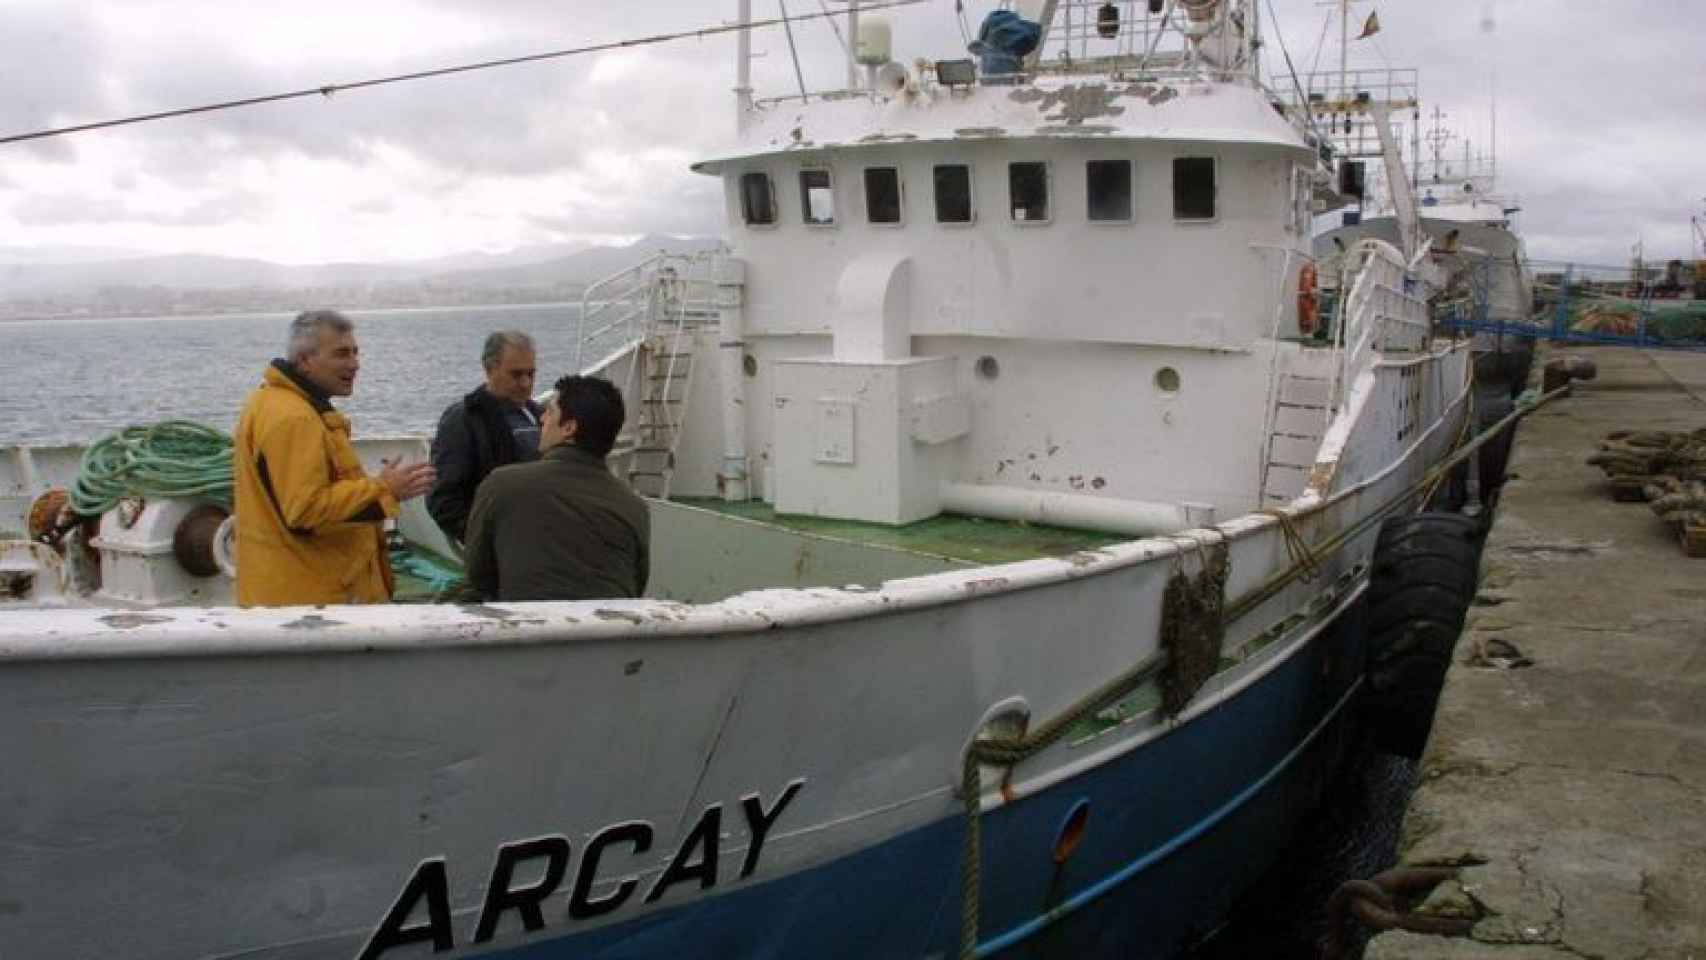 El barco pesquero Arcay, que fue rescatado en las mismas aguas.